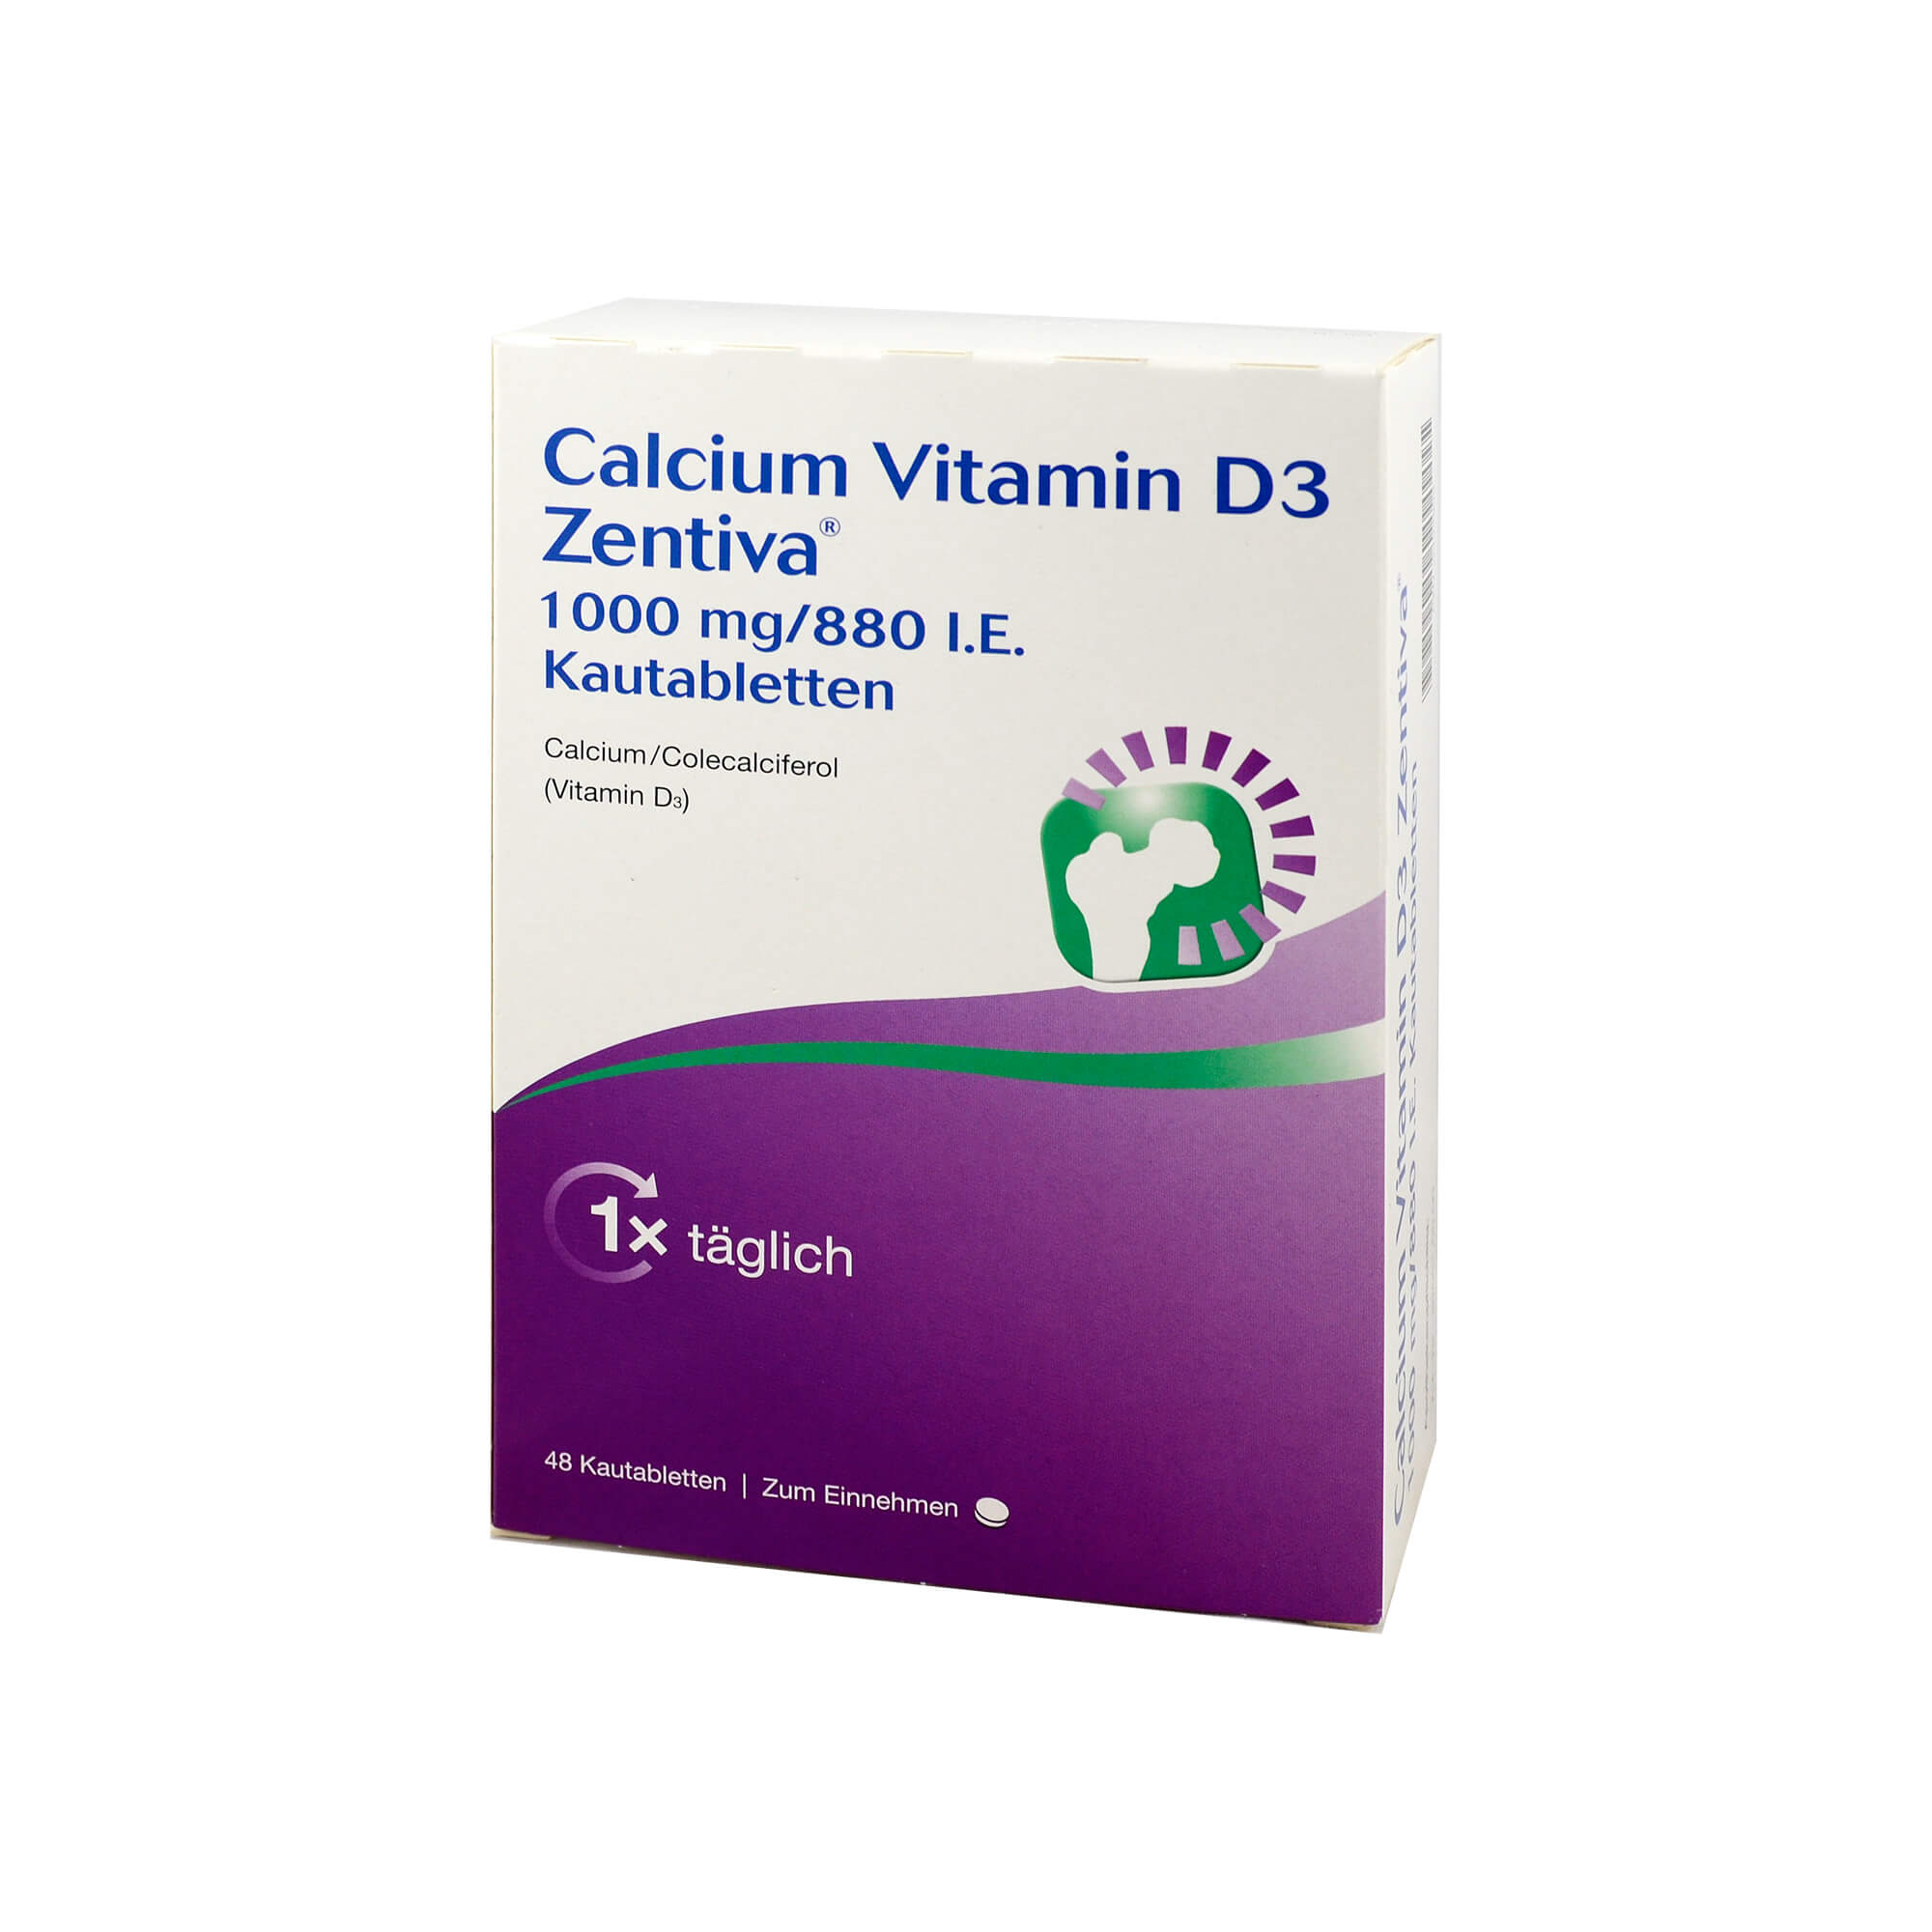 Zur Prophylaxe und Behandlung von Calcium- und Vitamin-D-Mangelzuständen bei älteren Menschen.